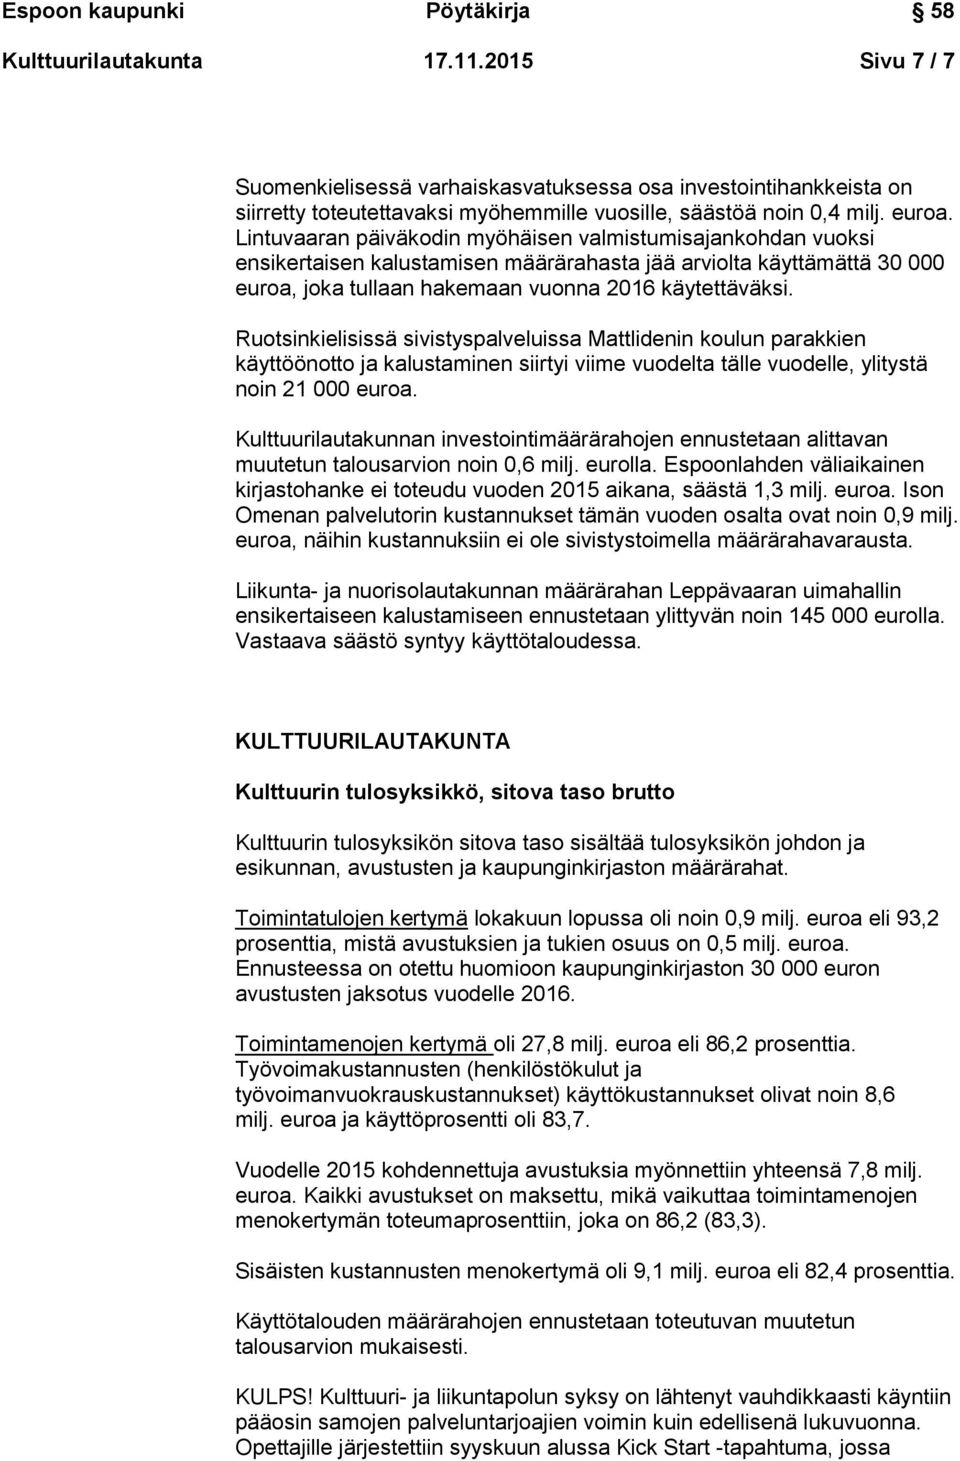 Ruotsinkielisissä sivistyspalveluissa Mattlidenin koulun parakkien käyttöönotto ja kalustaminen siirtyi viime vuodelta tälle vuodelle, ylitystä noin 21 000 euroa.